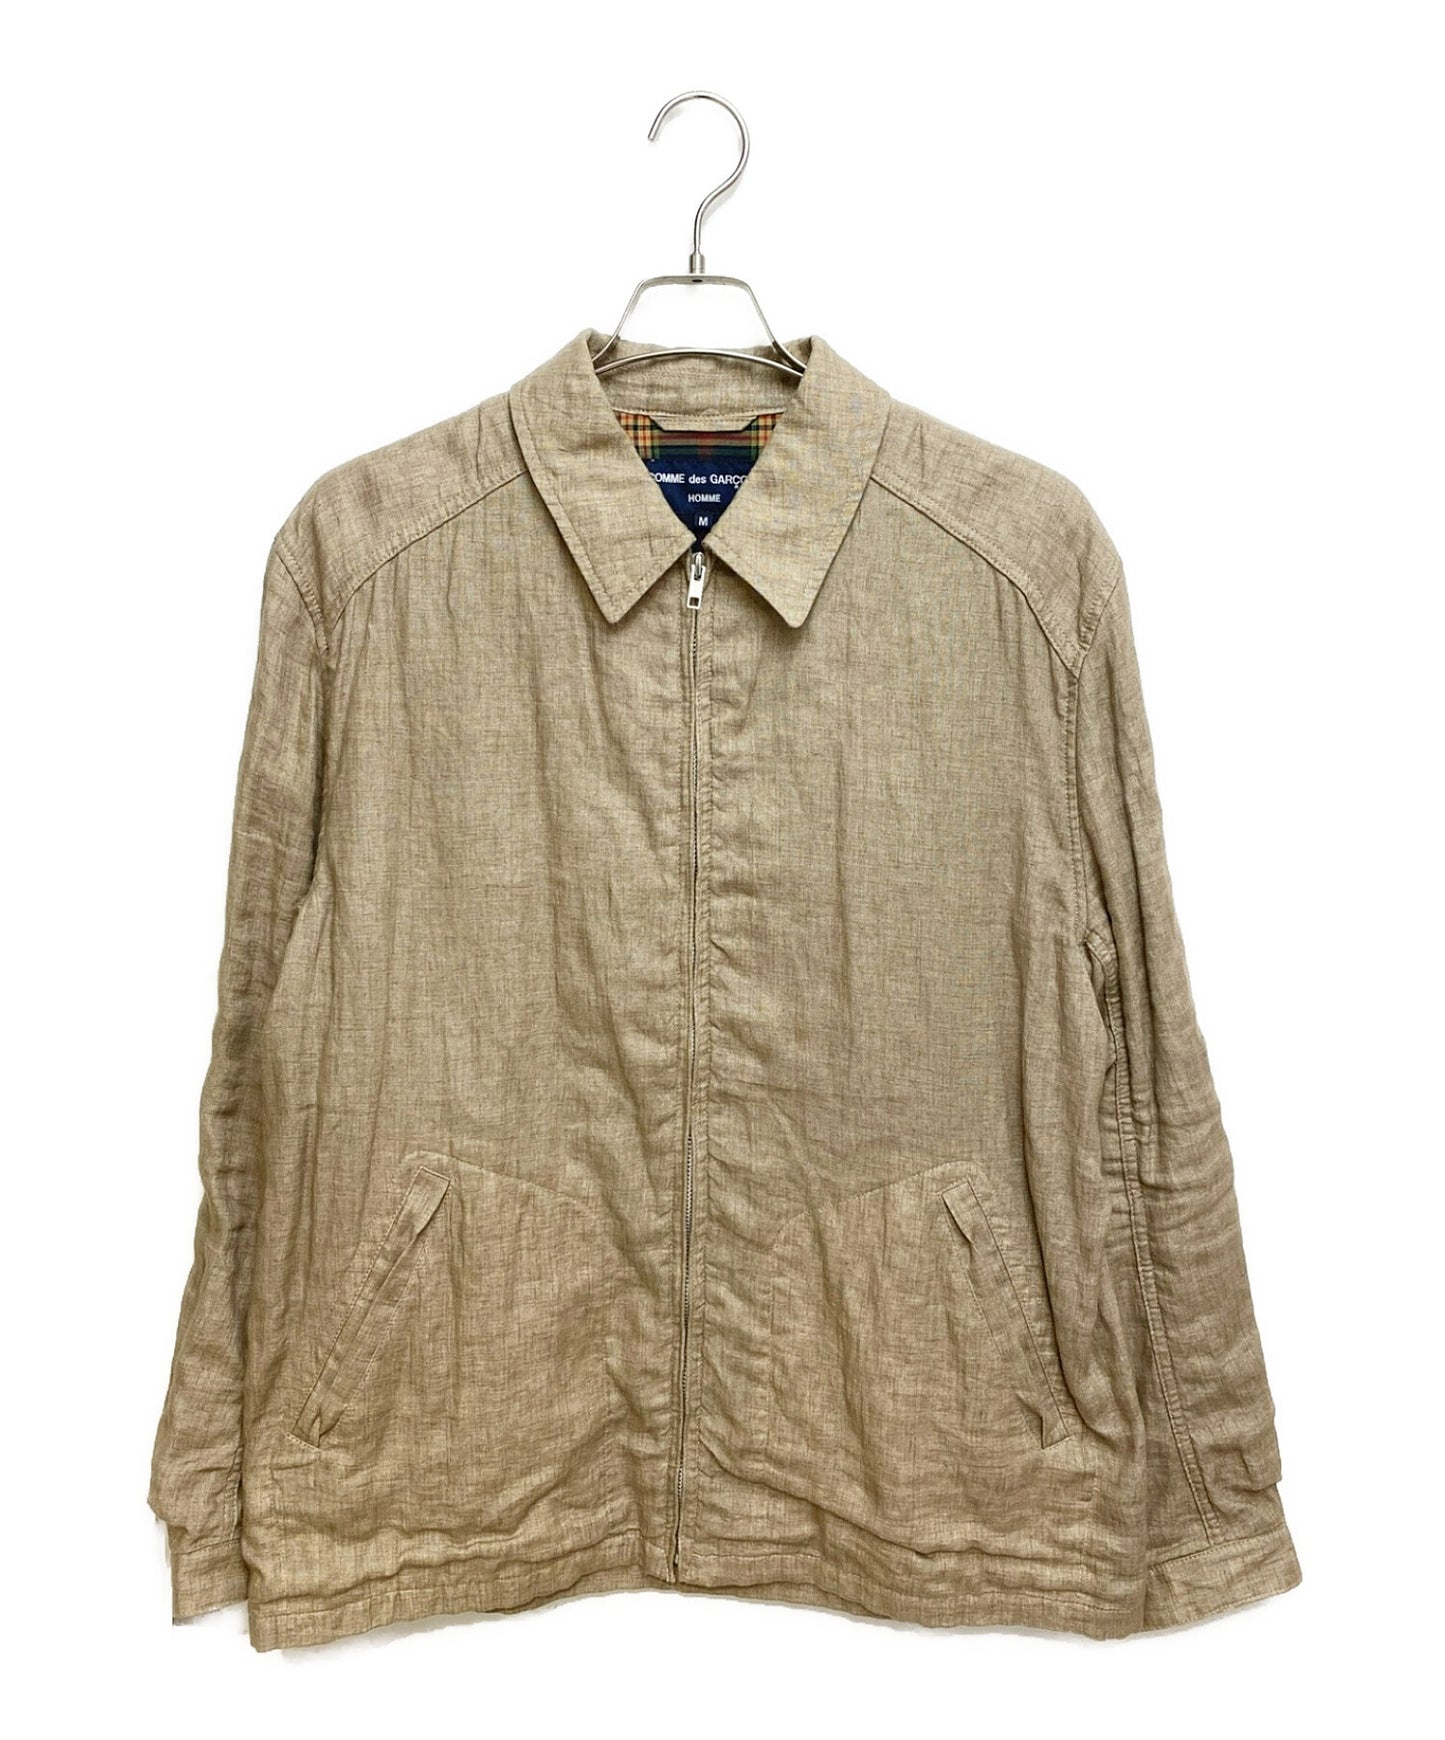 [Pre-owned] COMME des GARCONS HOMME linen-zip shirt HG-J028